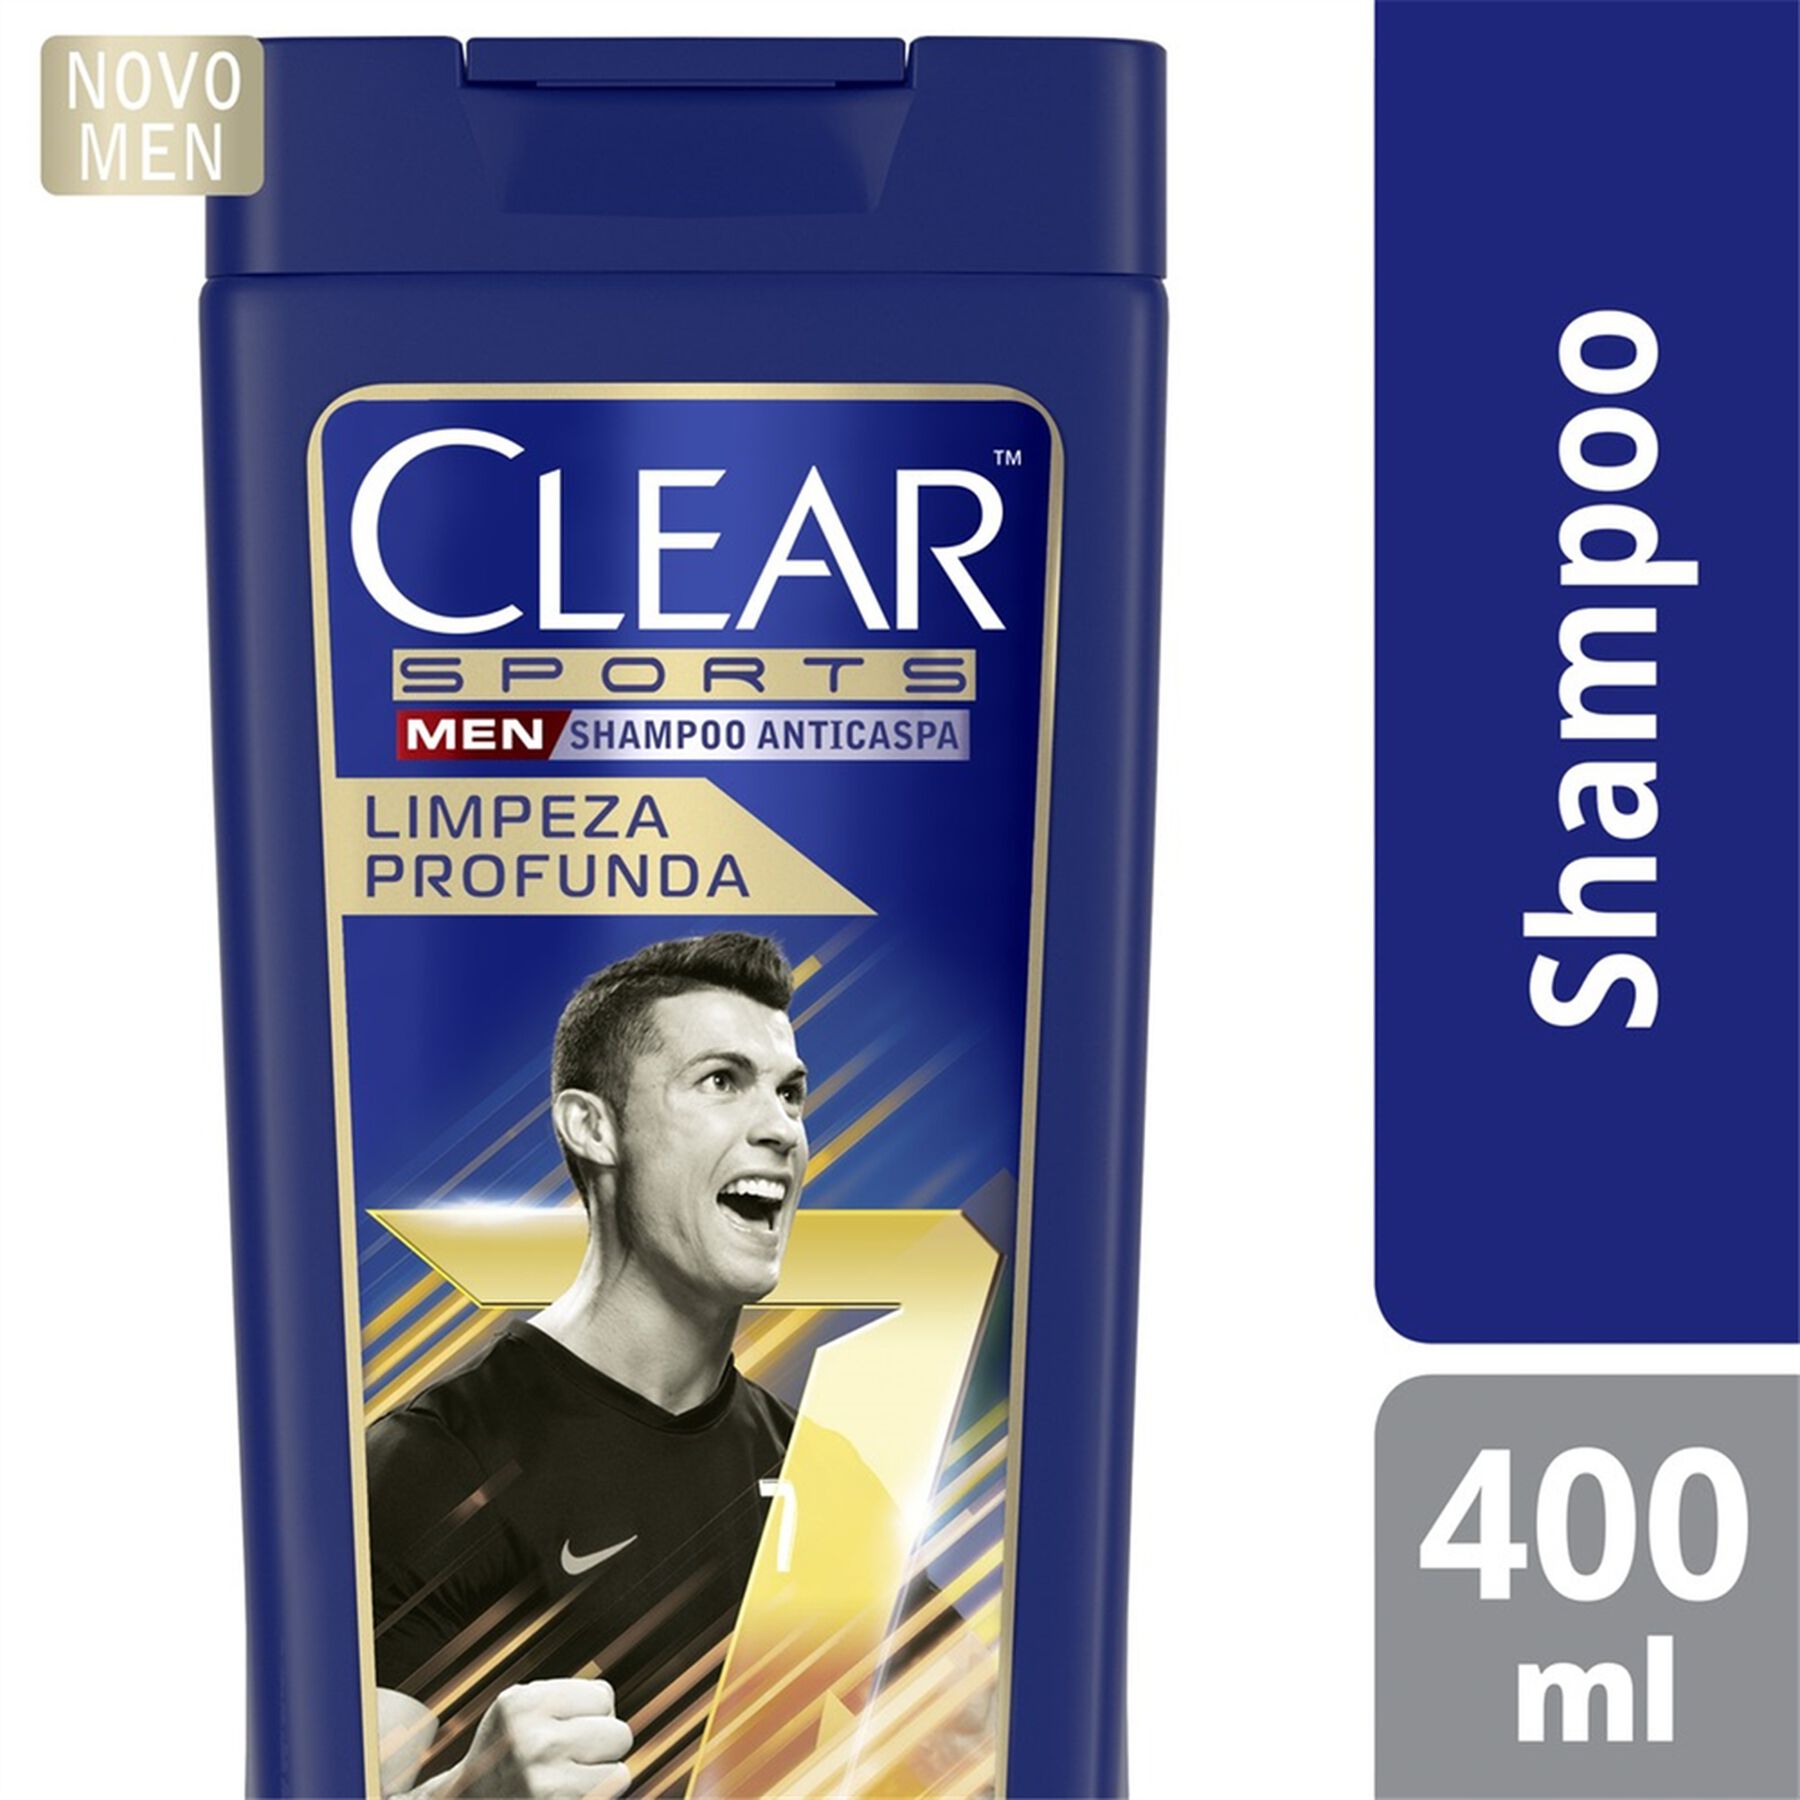 Shampoo Anticaspa Clear Men Sports Cristiano Ronaldo Limpeza Profunda 400 ml